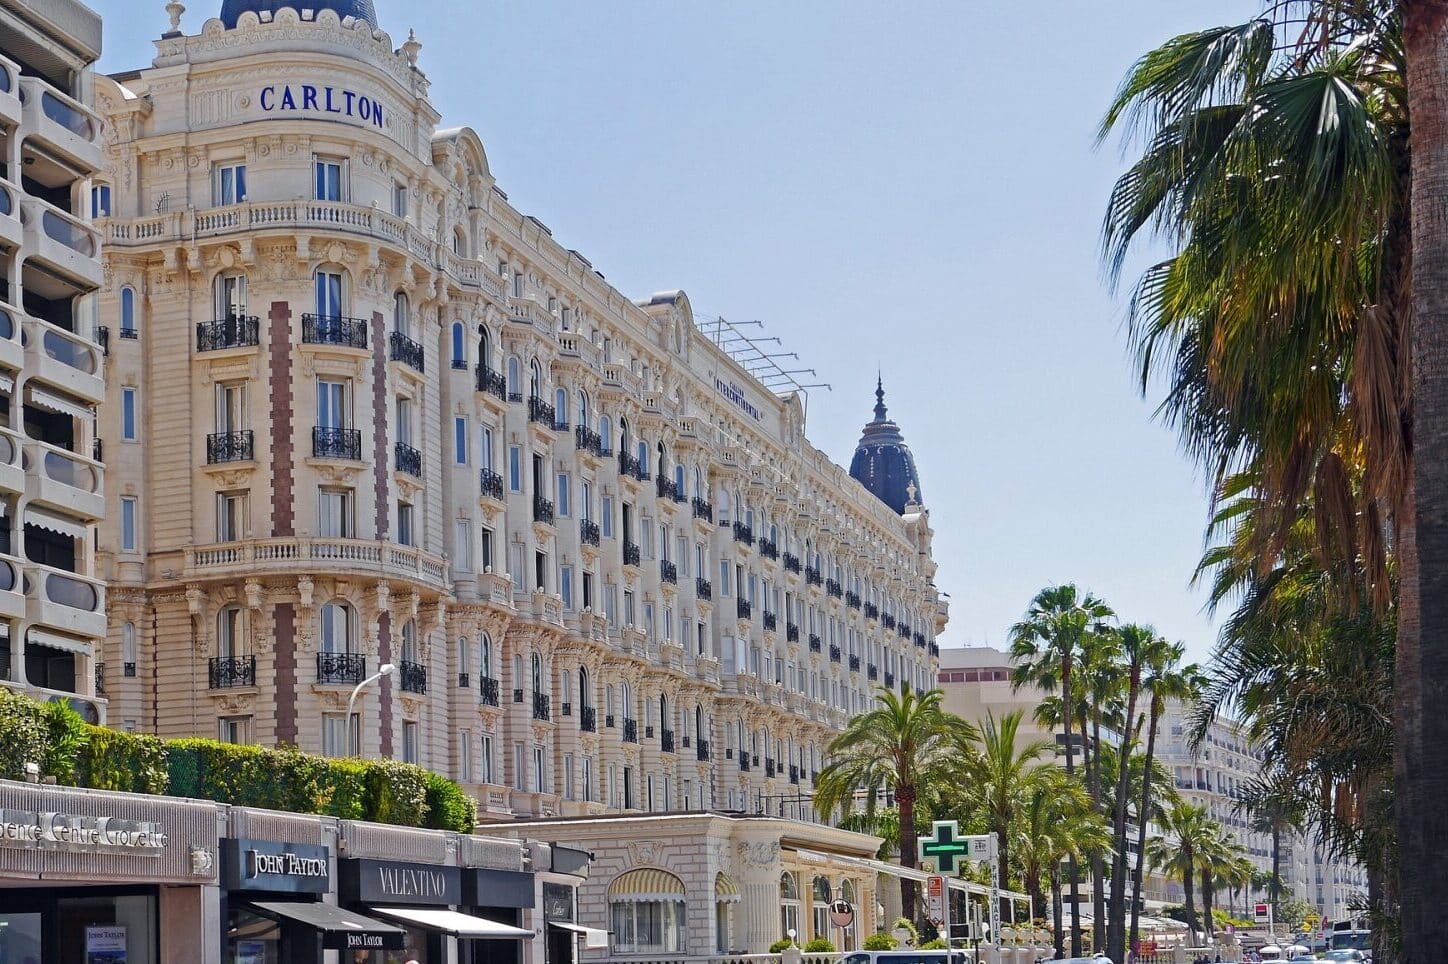 Carlton Cannes, Le célèbre hôtel Carlton de Cannes va rouvrir après sept ans de travaux, Made in Marseille